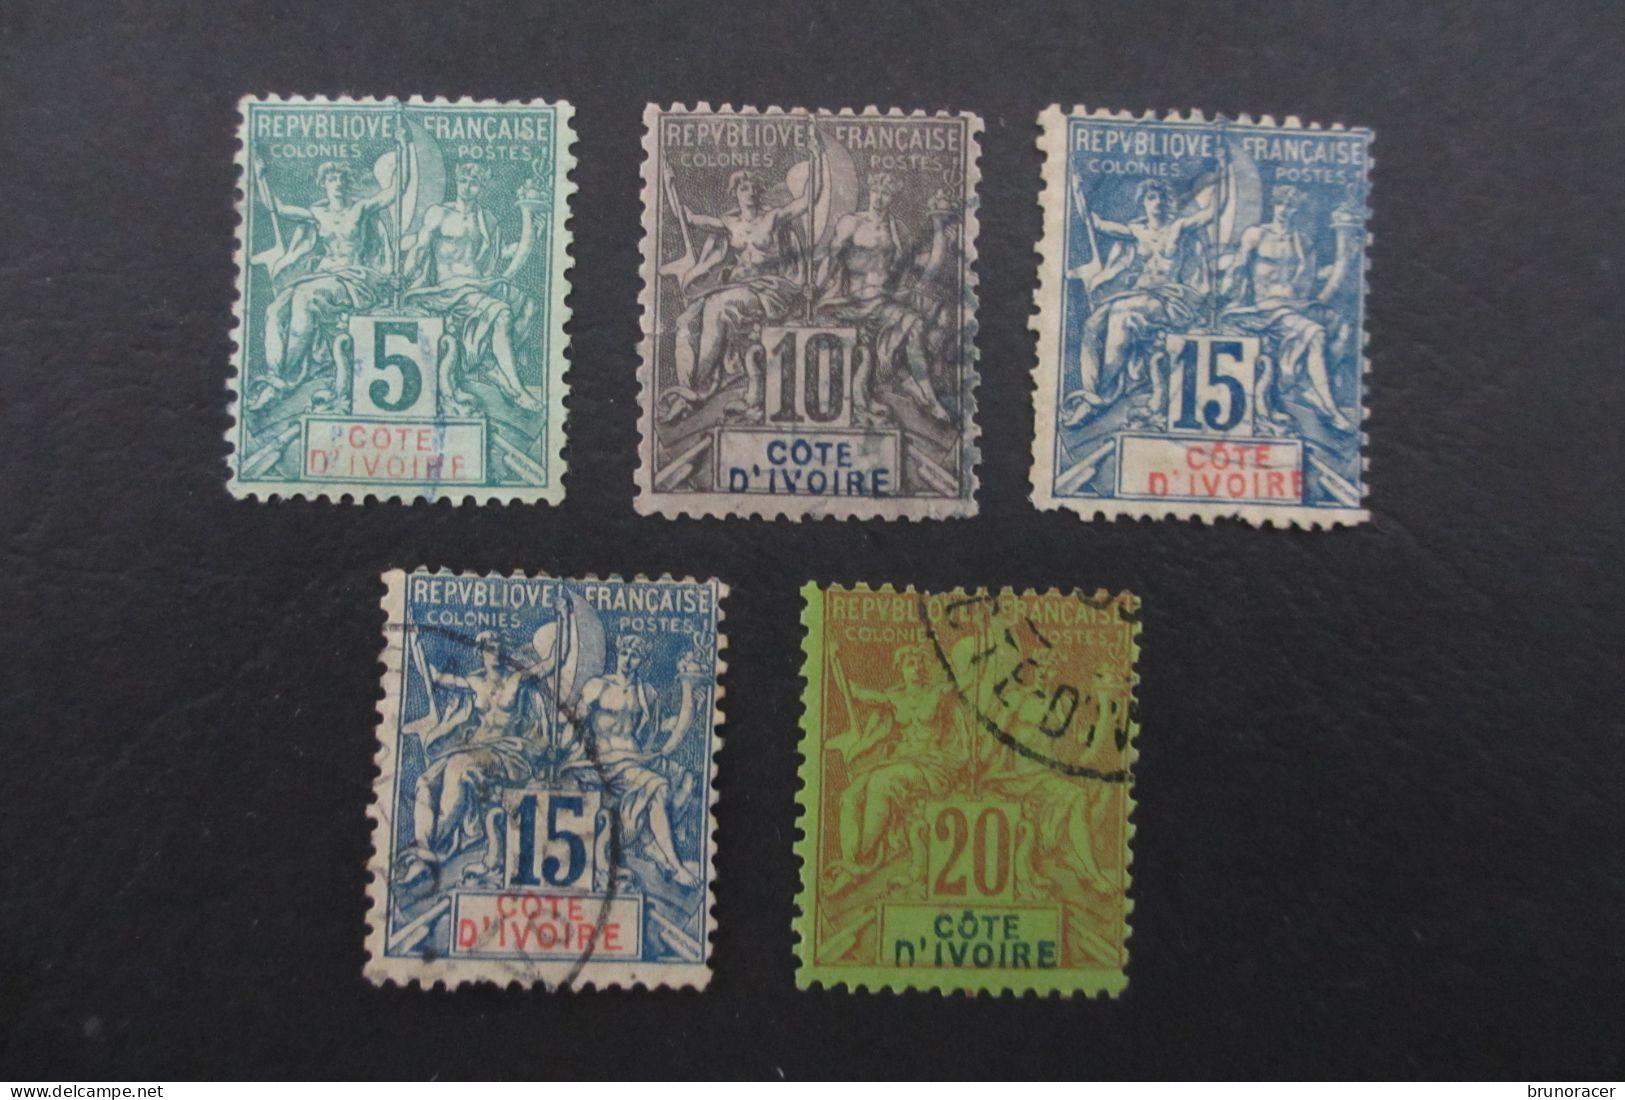 COTE D'IVOIRE TYPE LOT GROUPE N°4 à 7 Oblit. TBCOTE 88 EUROS VOIR SCANS - Used Stamps